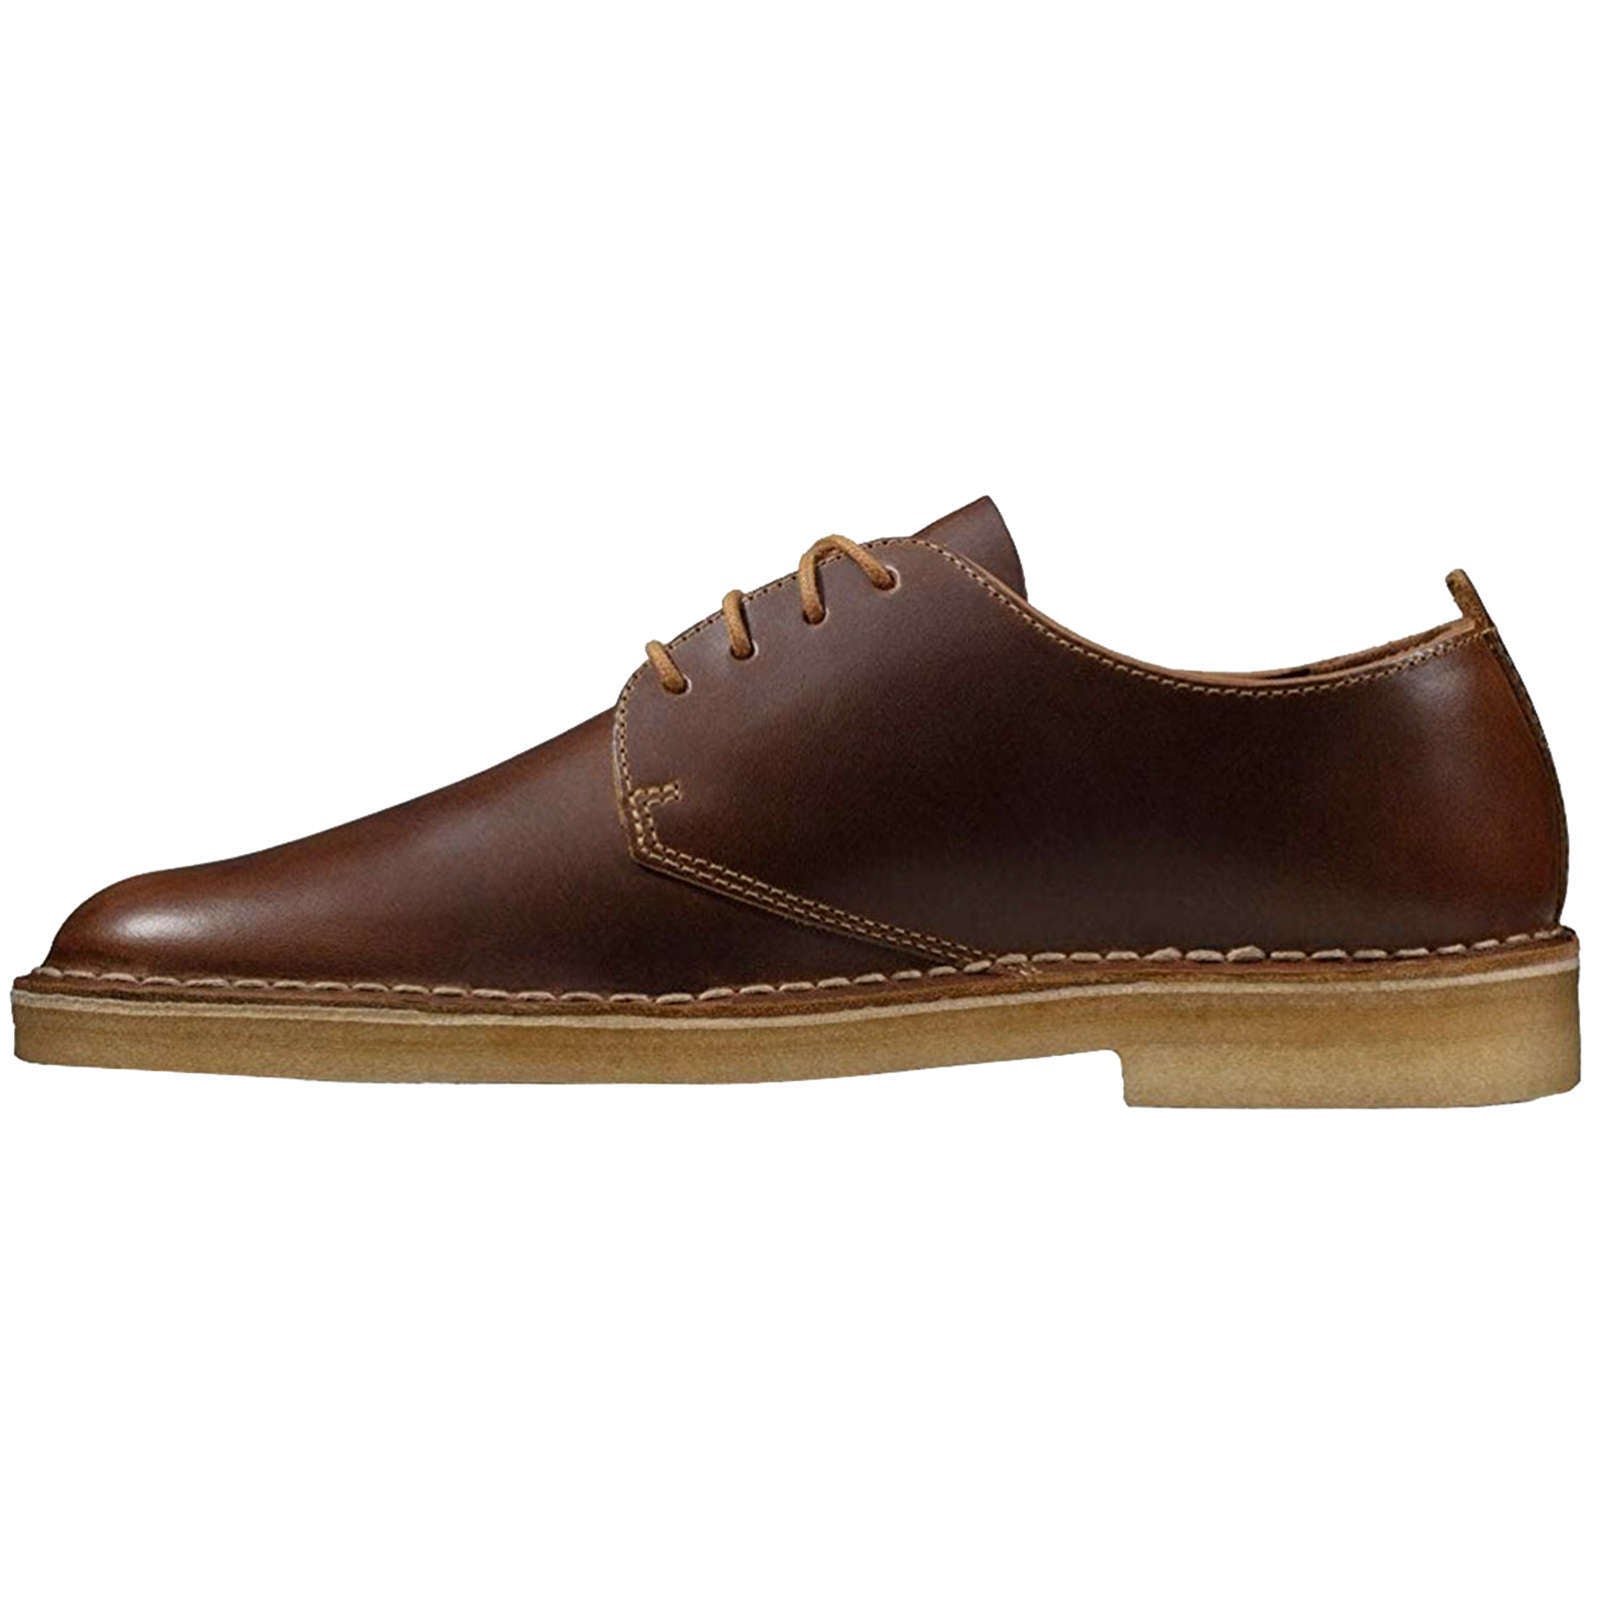 Clarks Originals Desert London Leather Men's Shoes#color_tan